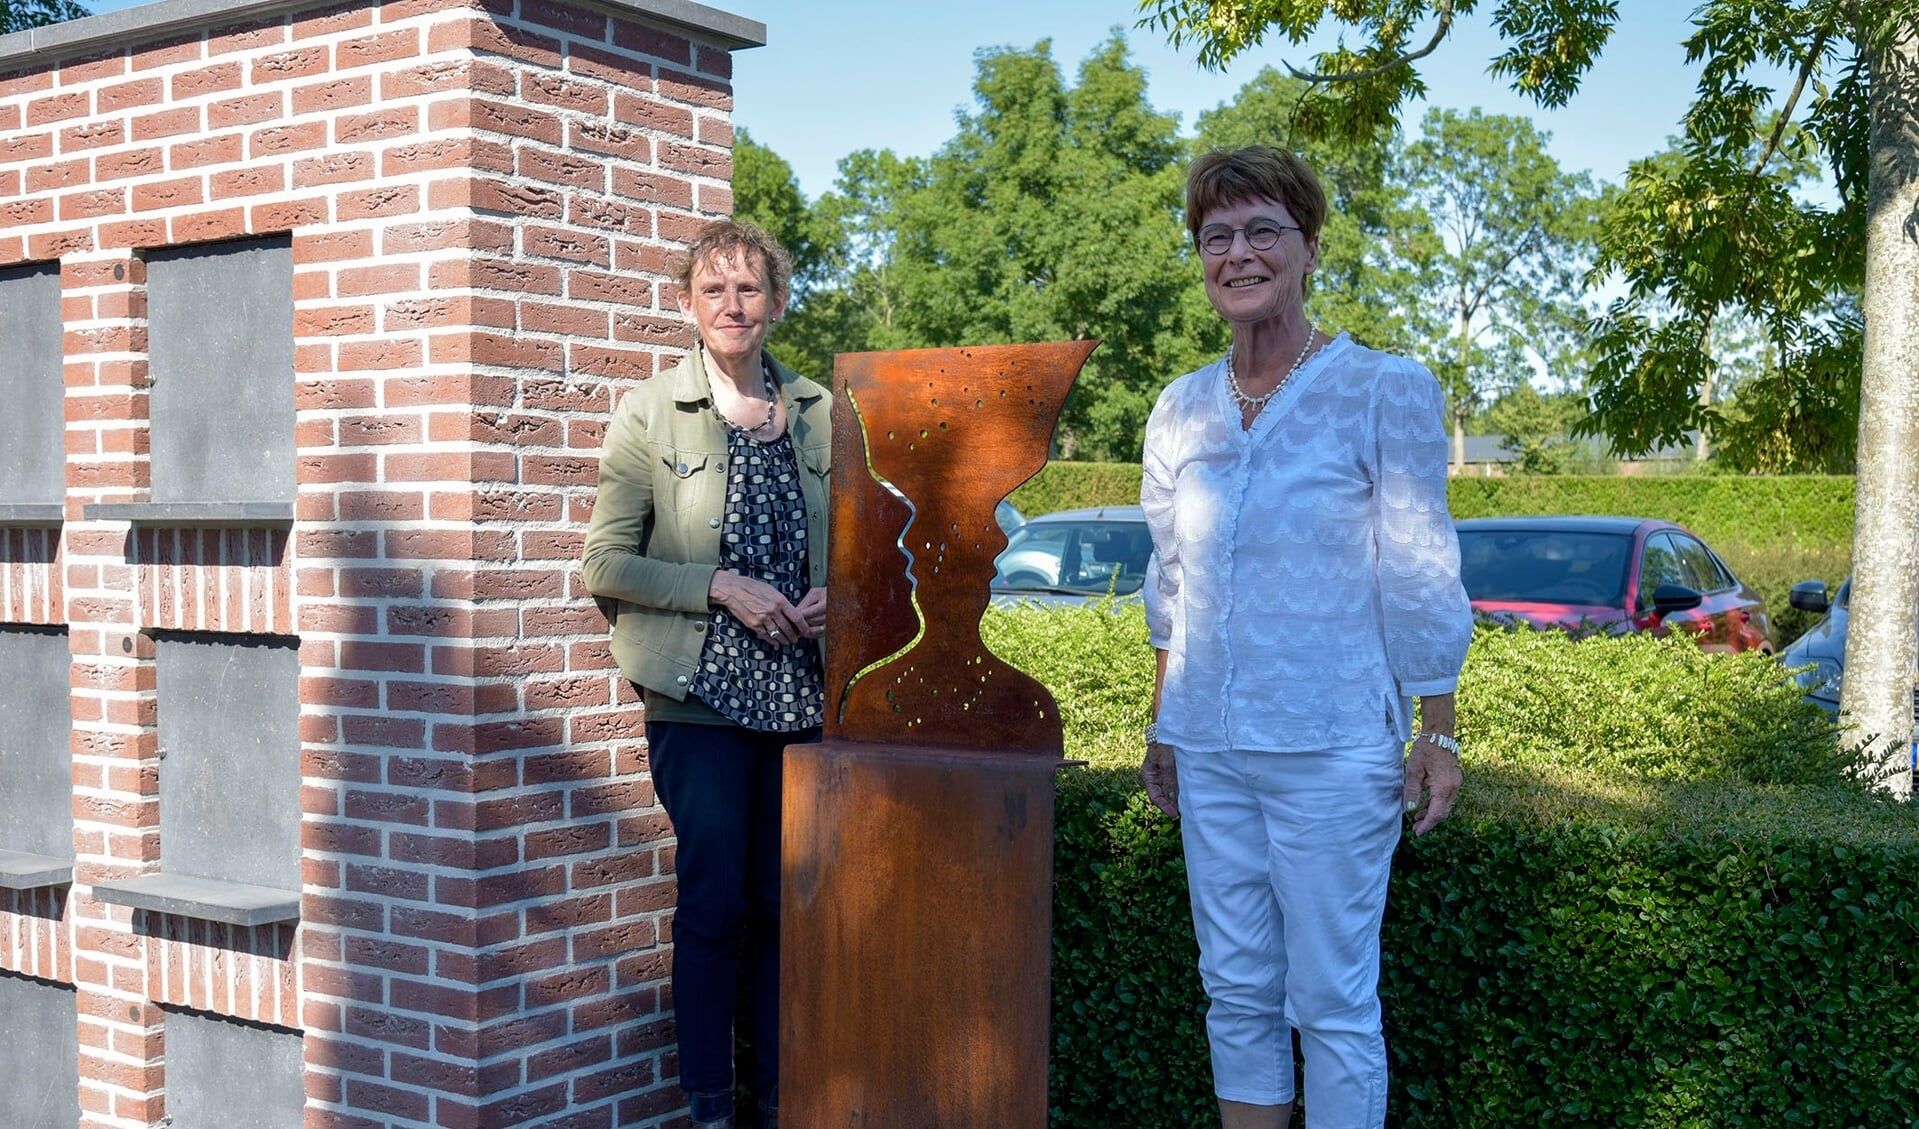 De onthulling bij de urnenmuur door wethouder Annemarie van de Pol (l) en kunstenaar Heleen van Nieuwland.